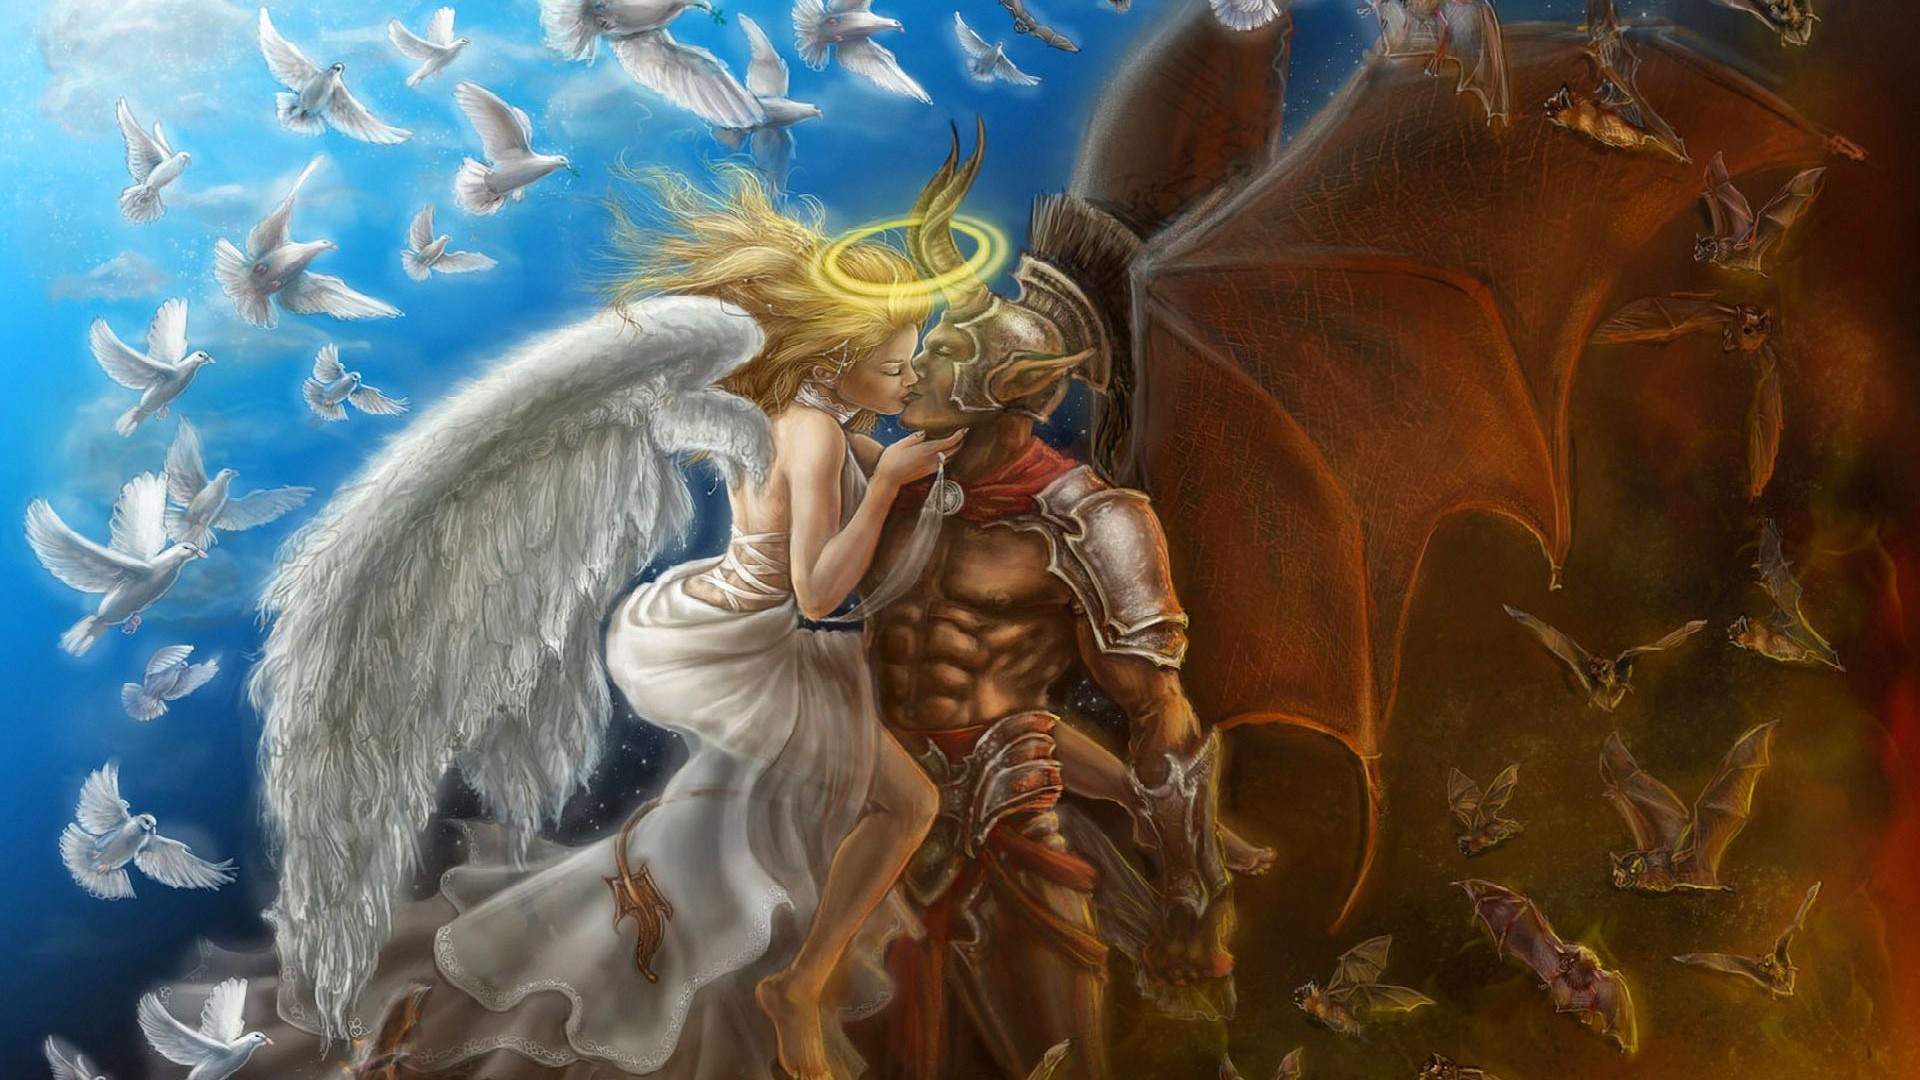 Love Between Angel And Demon - 1920x1080 Wallpaper 